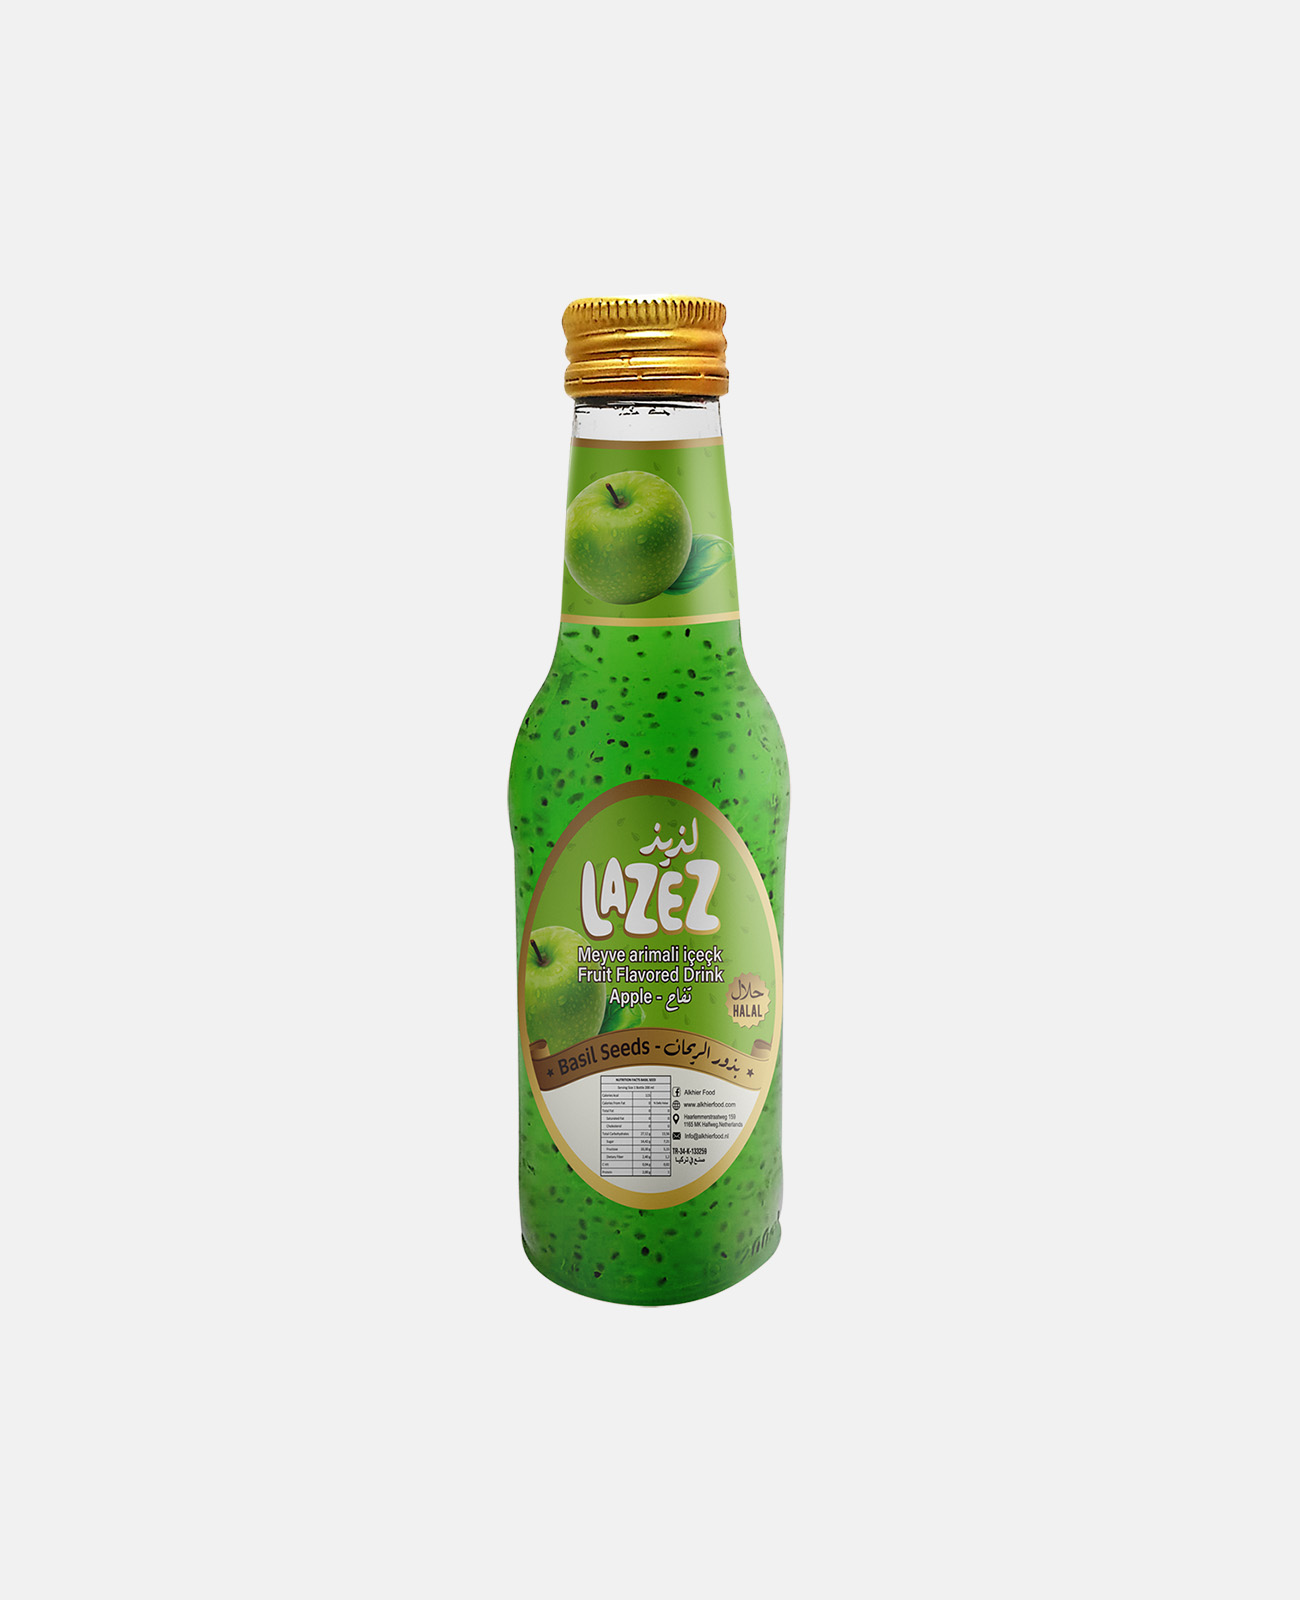 Lazez Basil Seeds Drink - Fruit Flavoured/Apple